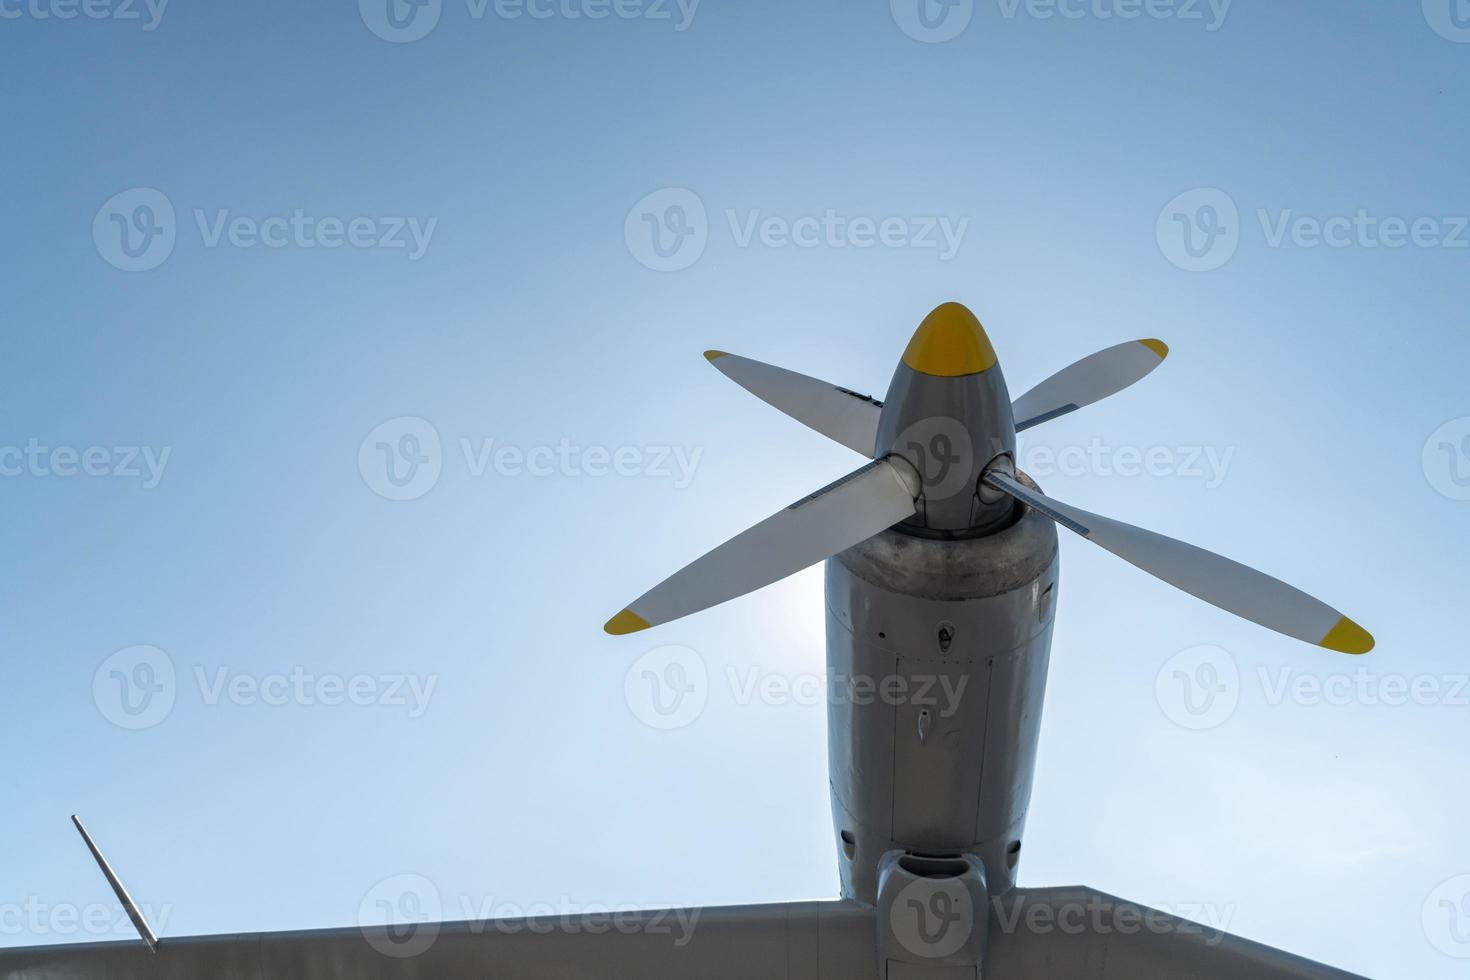 vliegtuigpropeller van militaire vliegtuigen, kopieer ruimte. blauwe hemelachtergrond. foto